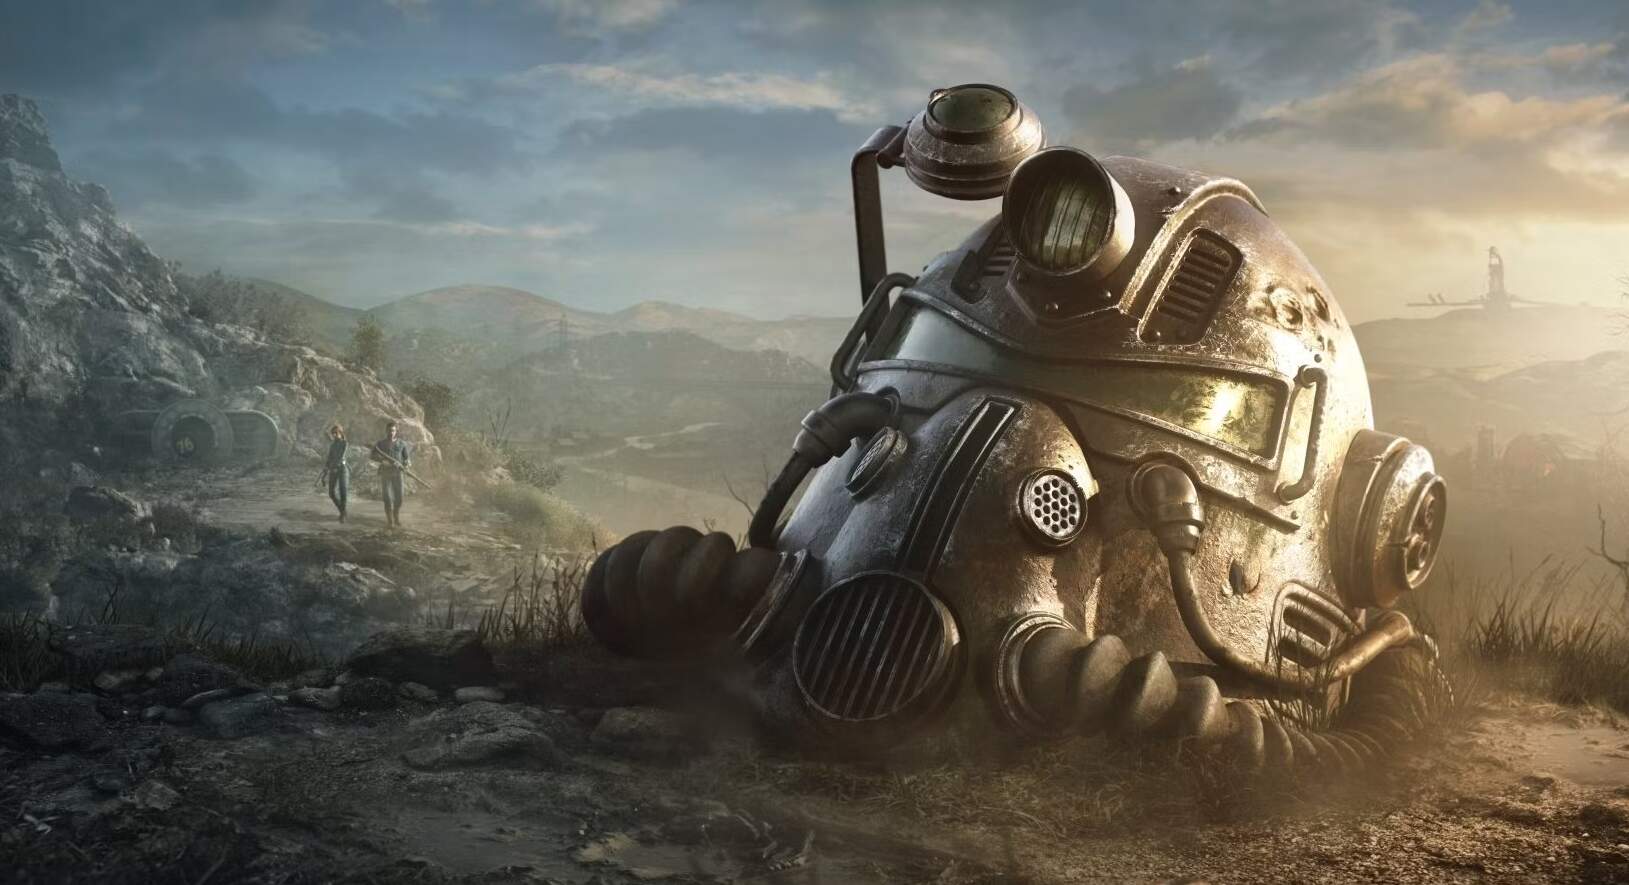 Хронология мира Fallout, игр и сериала Фоллаут — в каком году начался сериал?